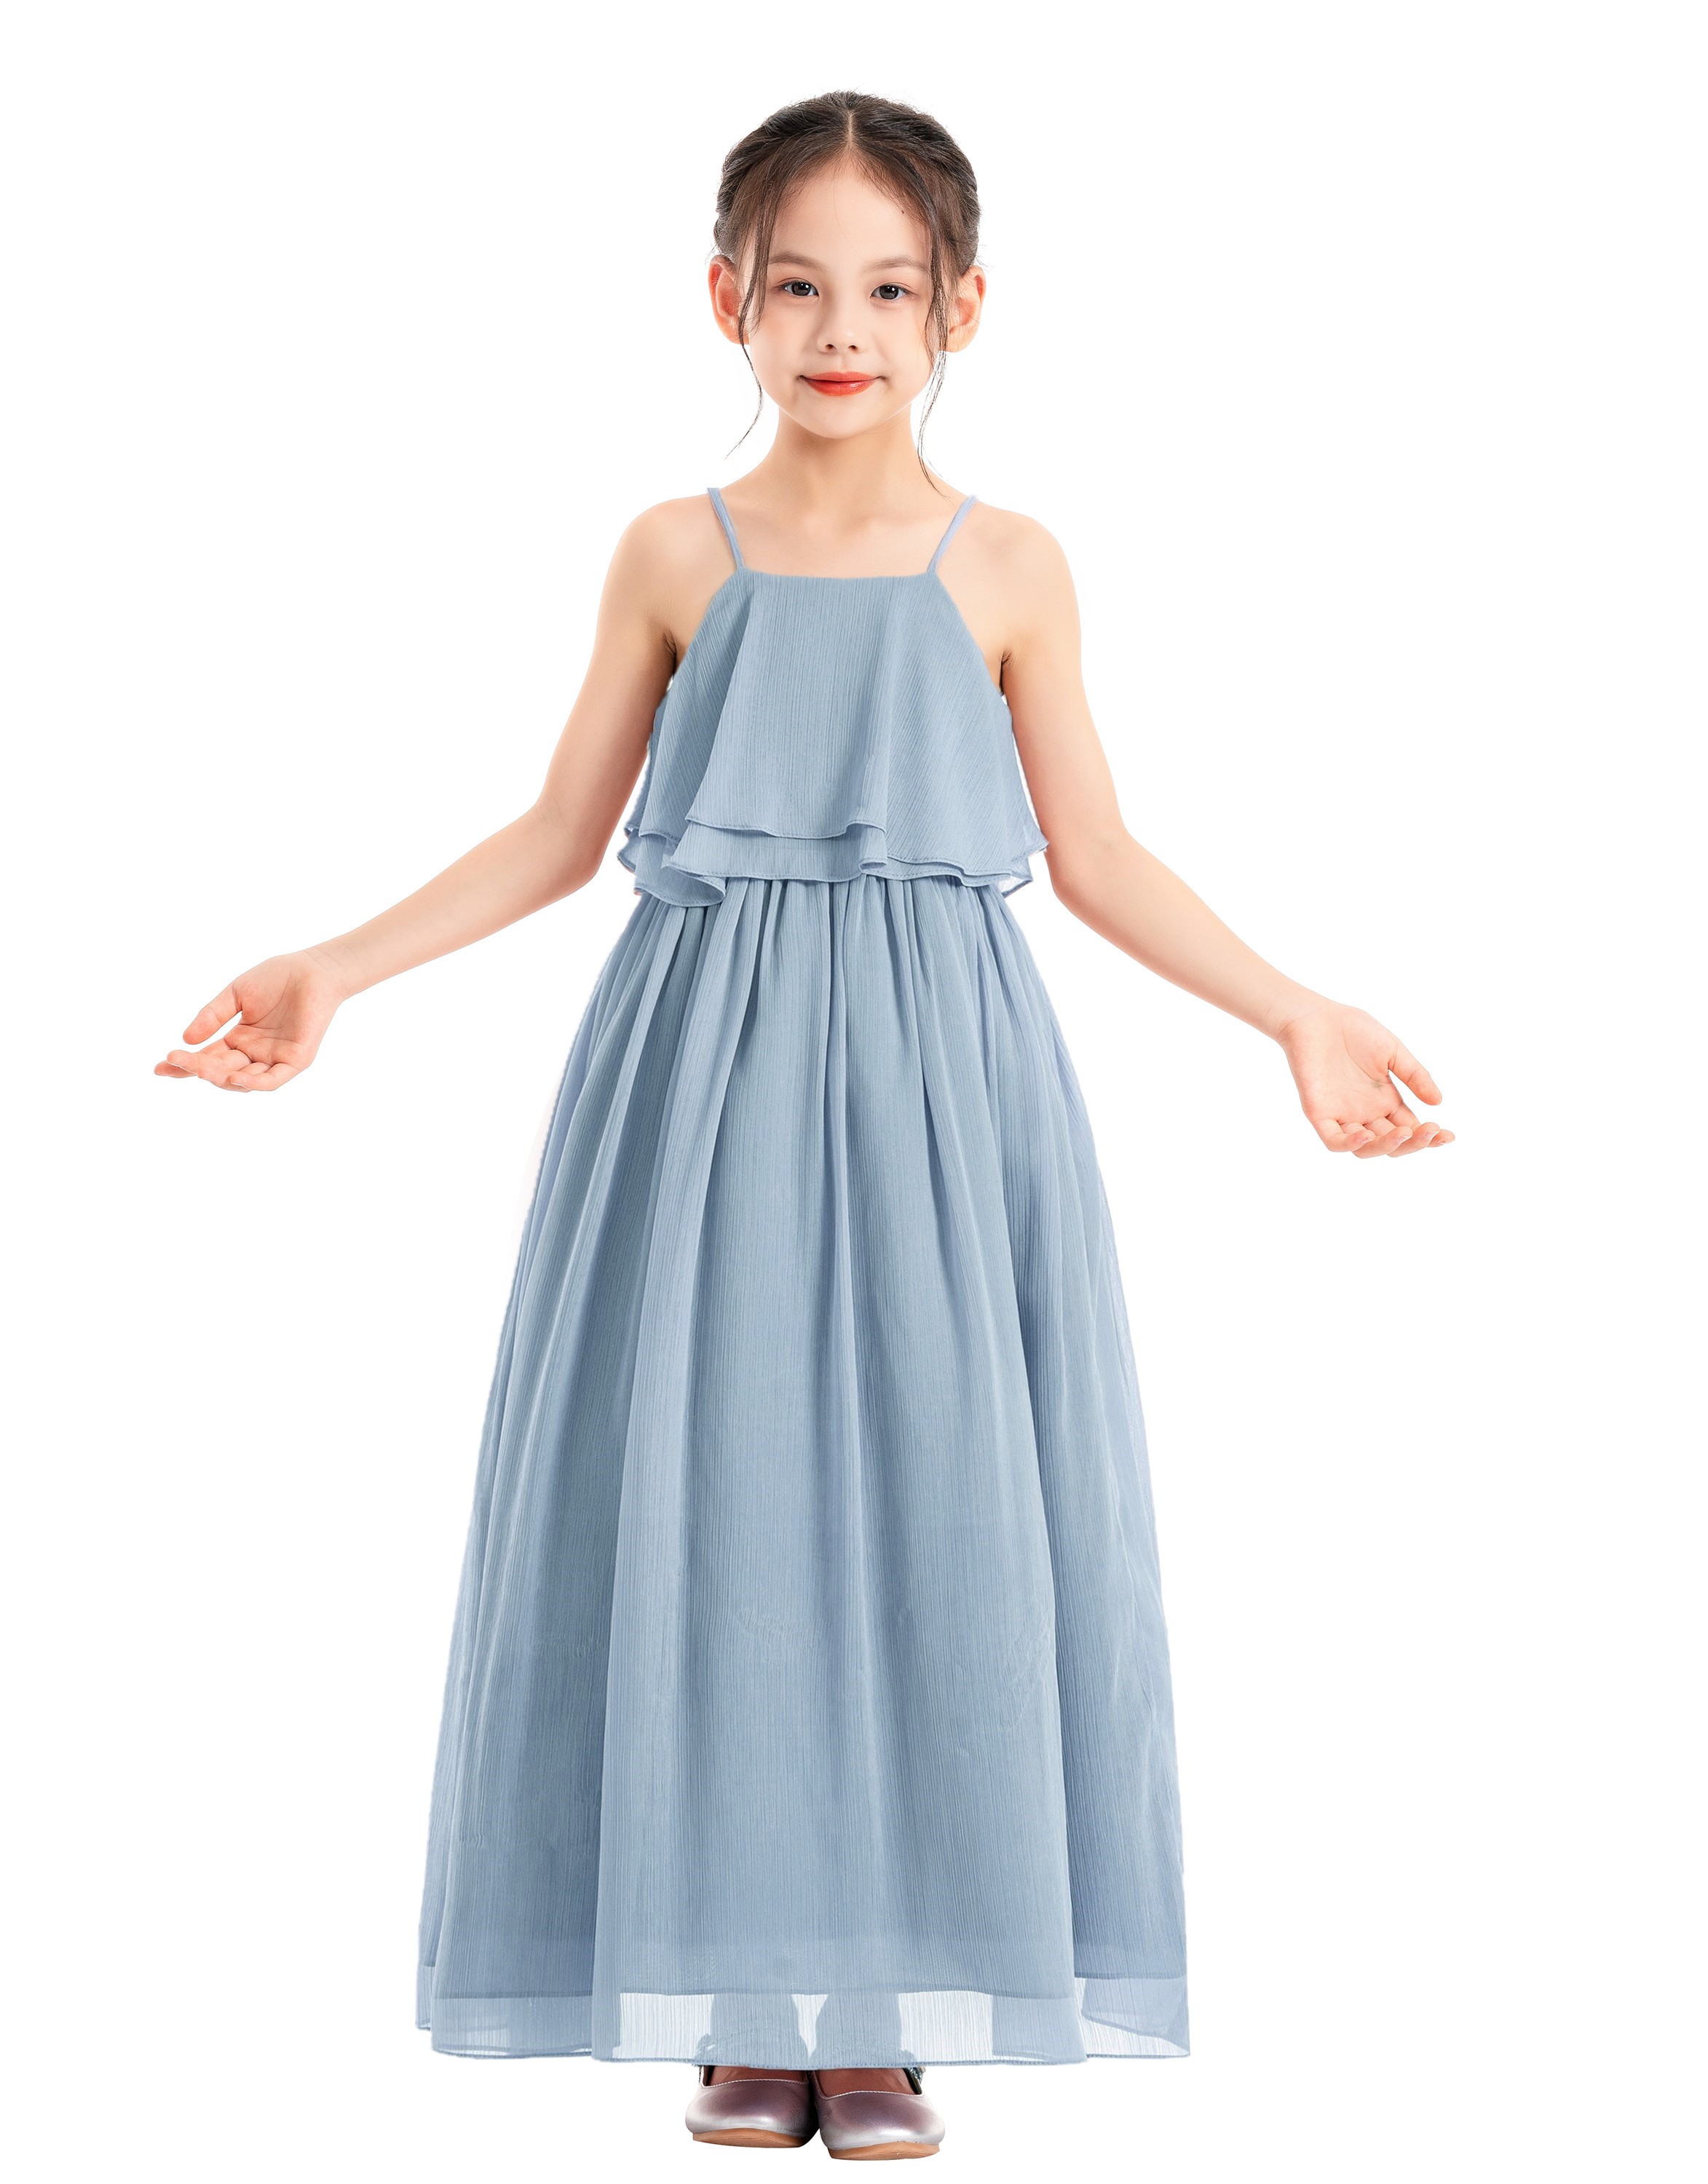 Dusty Blue A-Line Ruffle Chiffon Dress Chiffon Flower Girl Dress 192